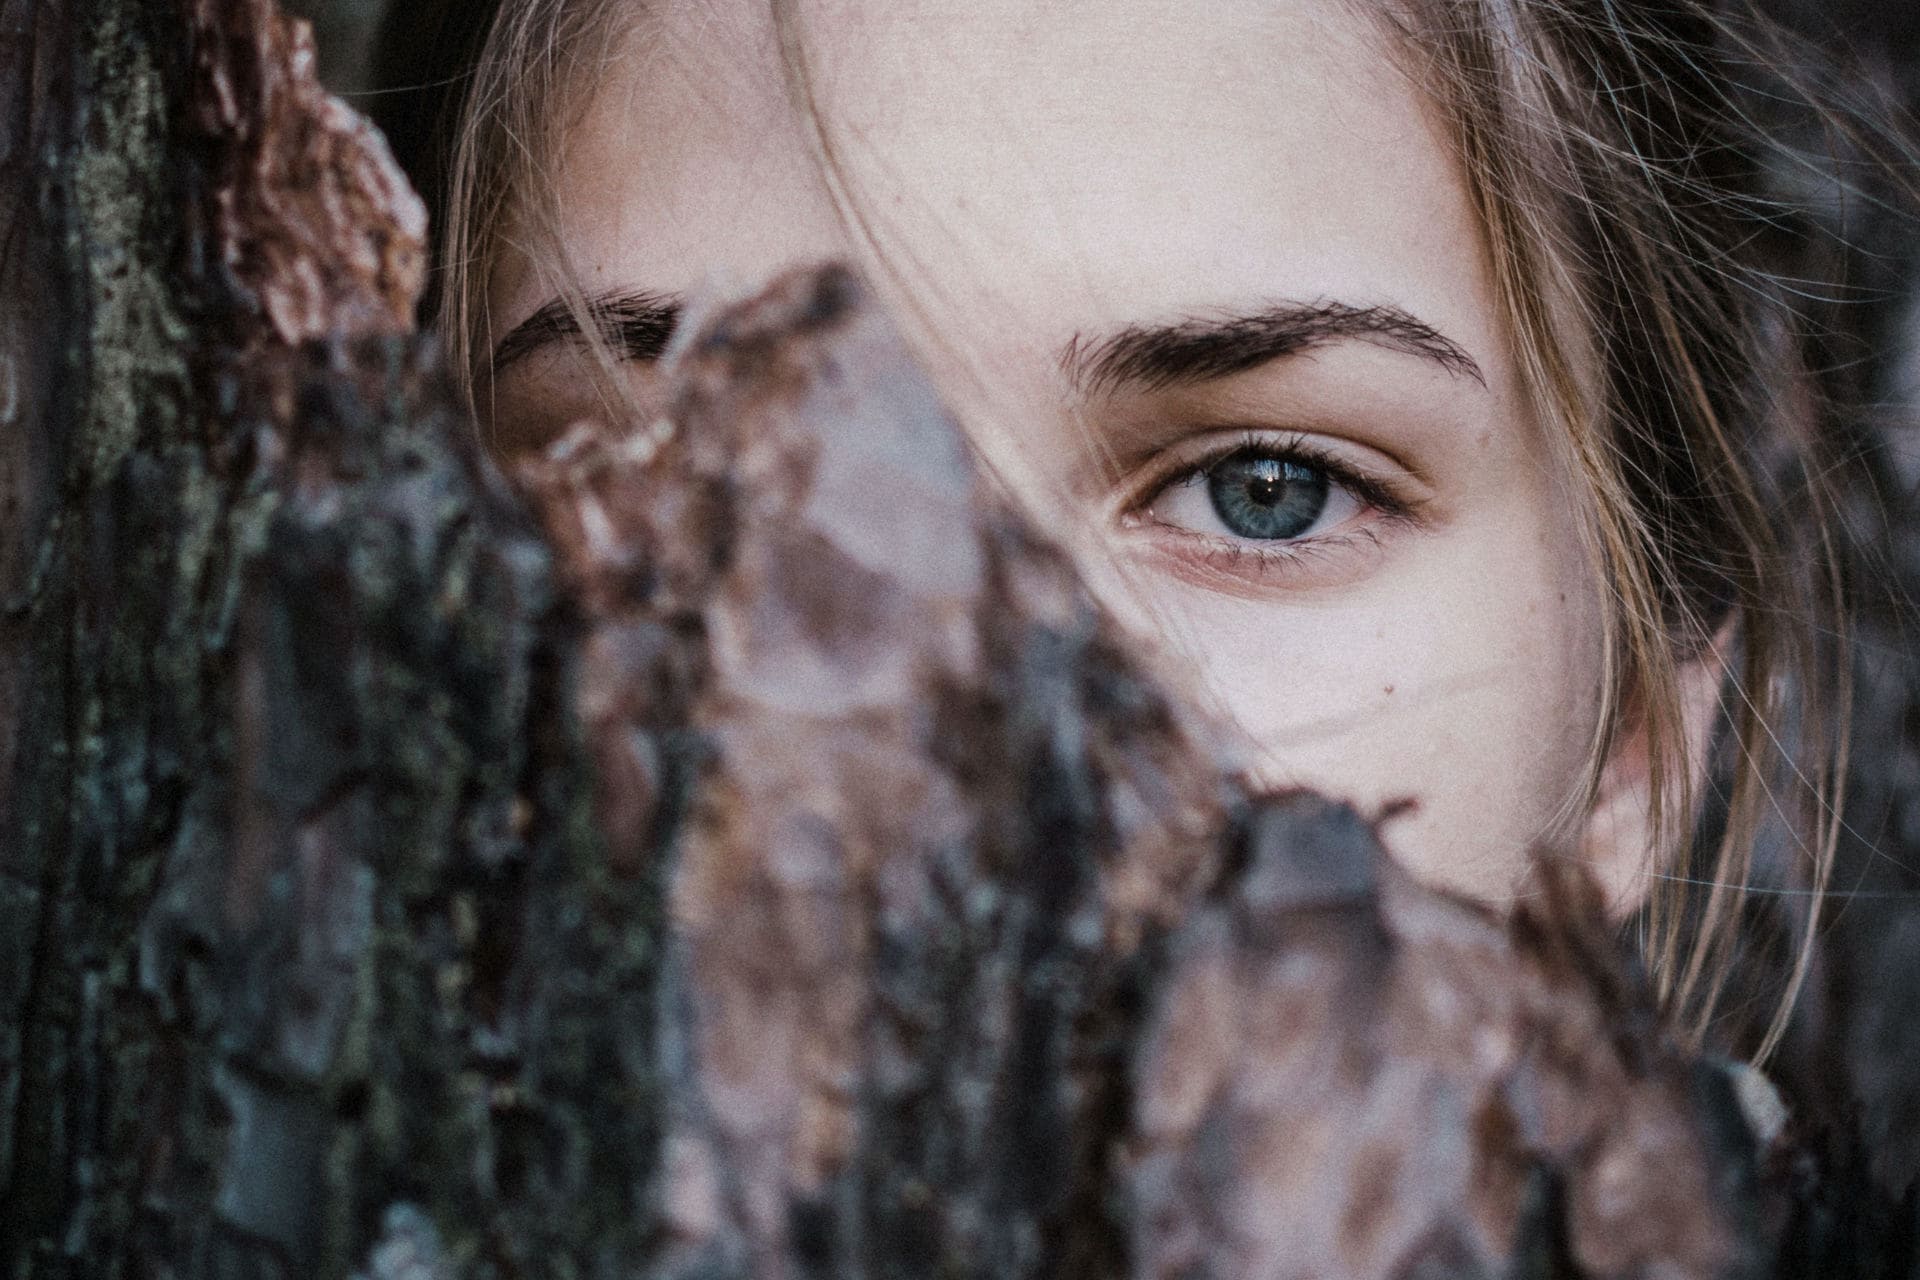 Gesicht einer Frau halb hinter Baumrinde versteckt